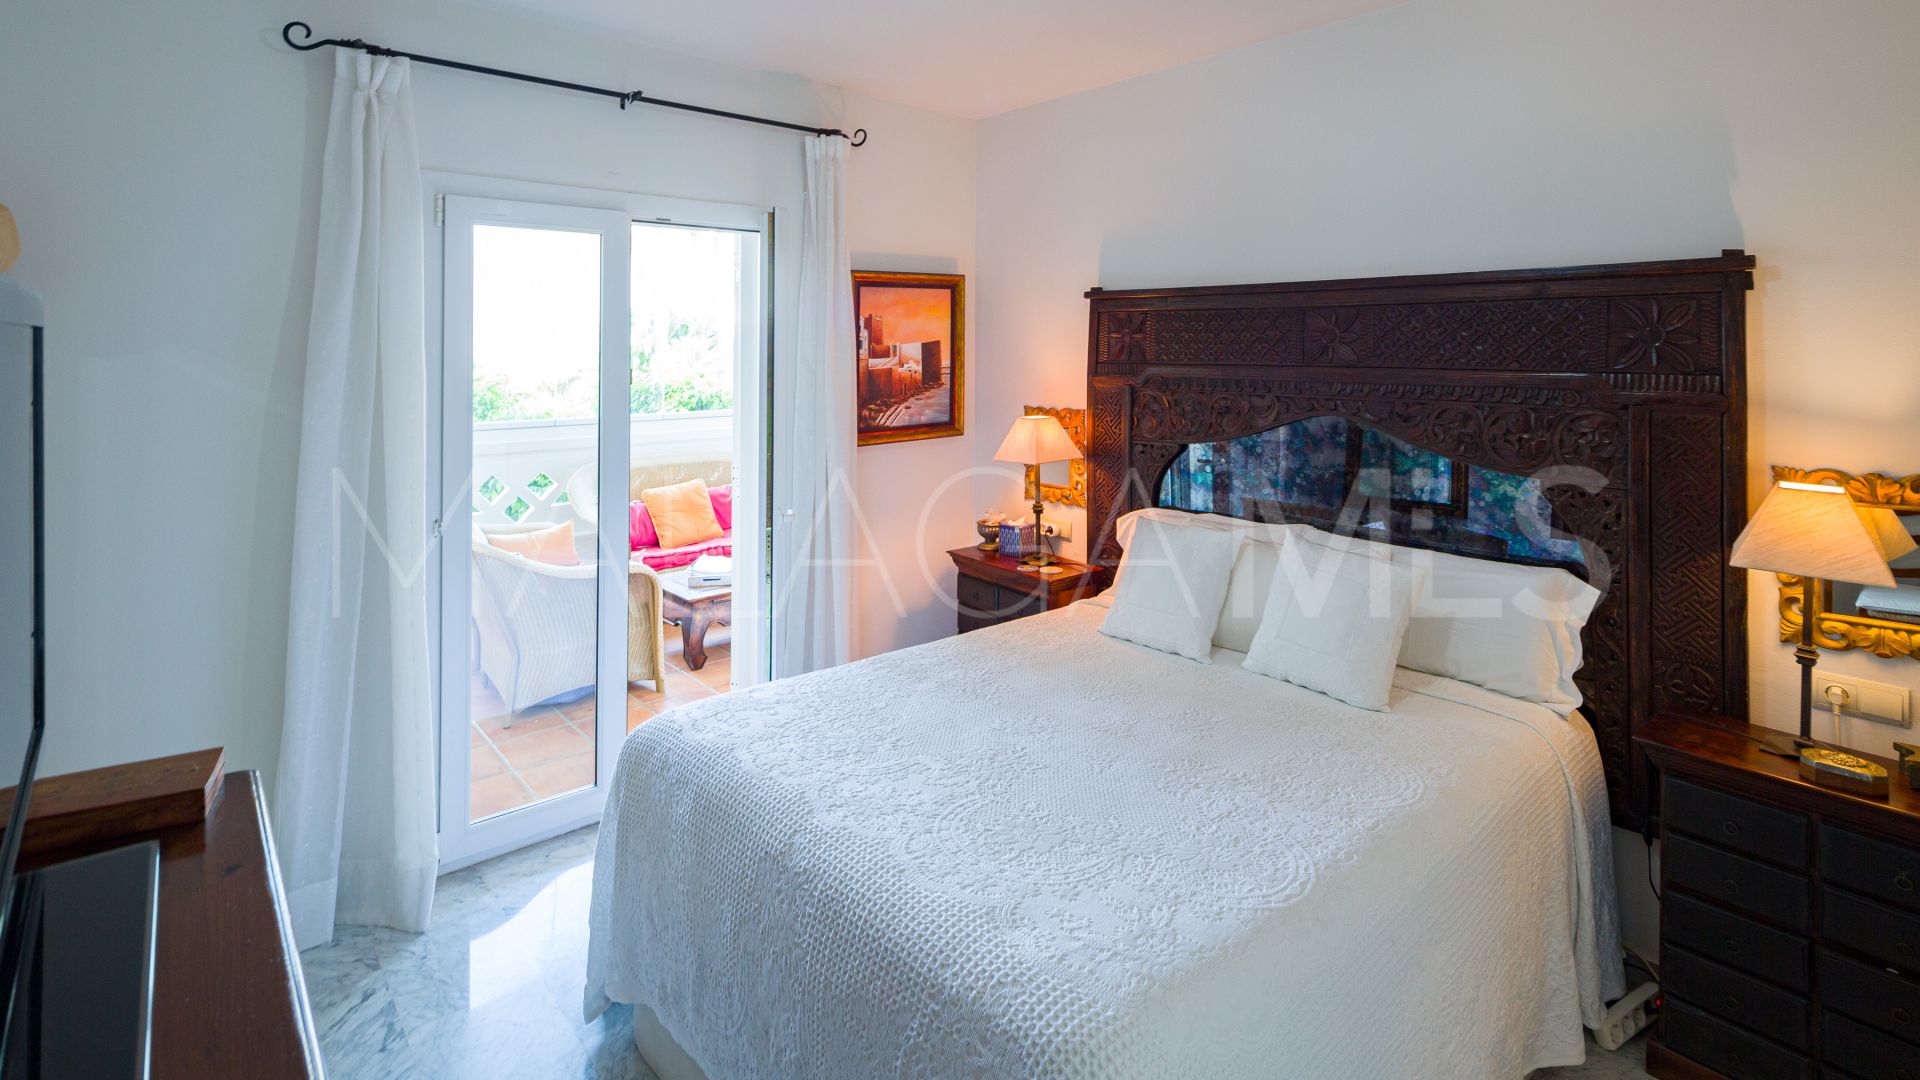 For sale ground floor duplex with 6 bedrooms in Marbella - Puerto Banus